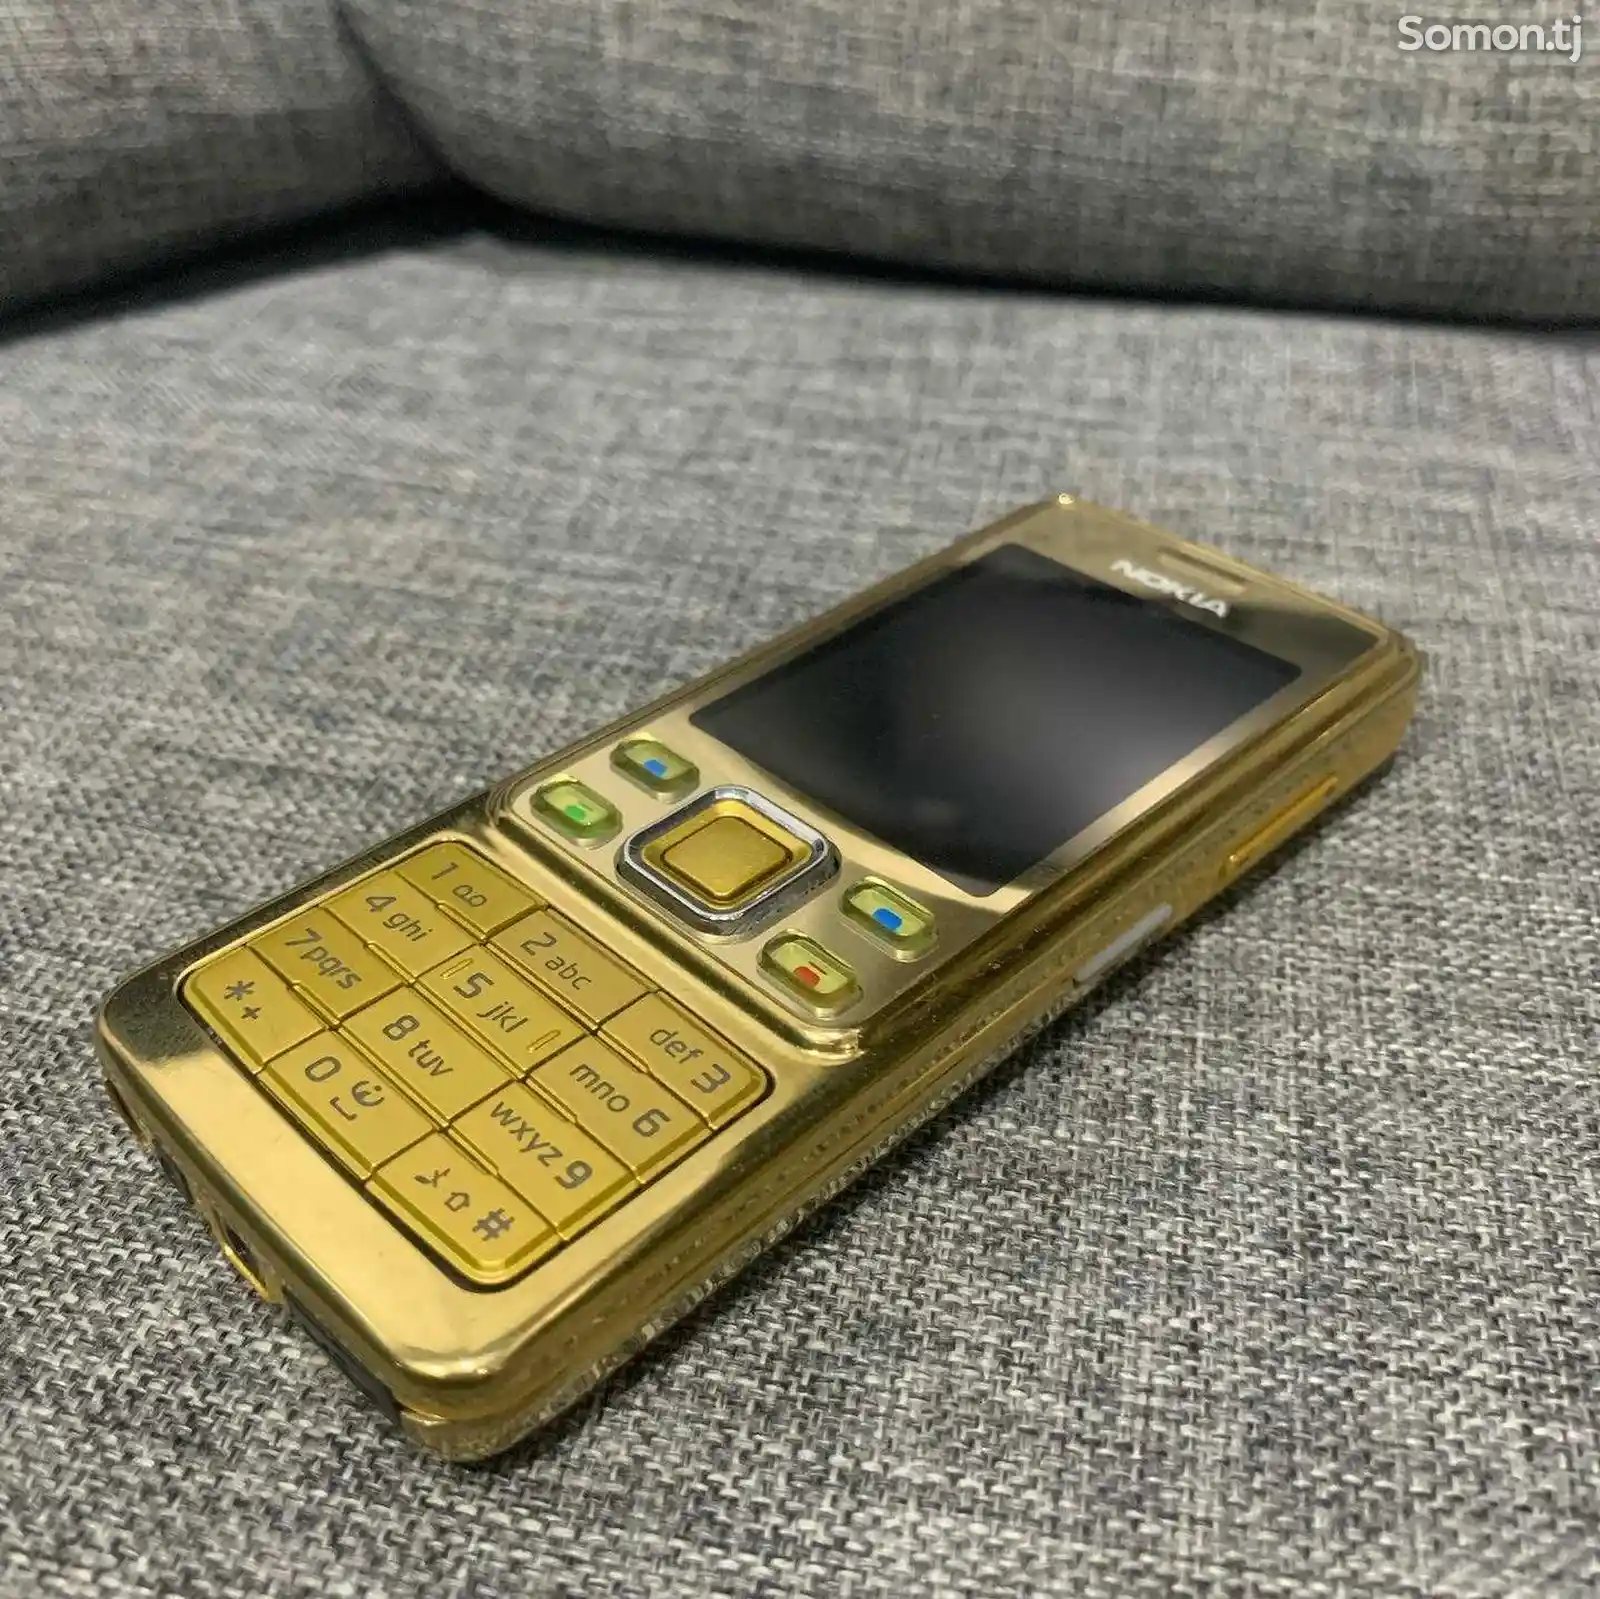 Nokia 6300-12